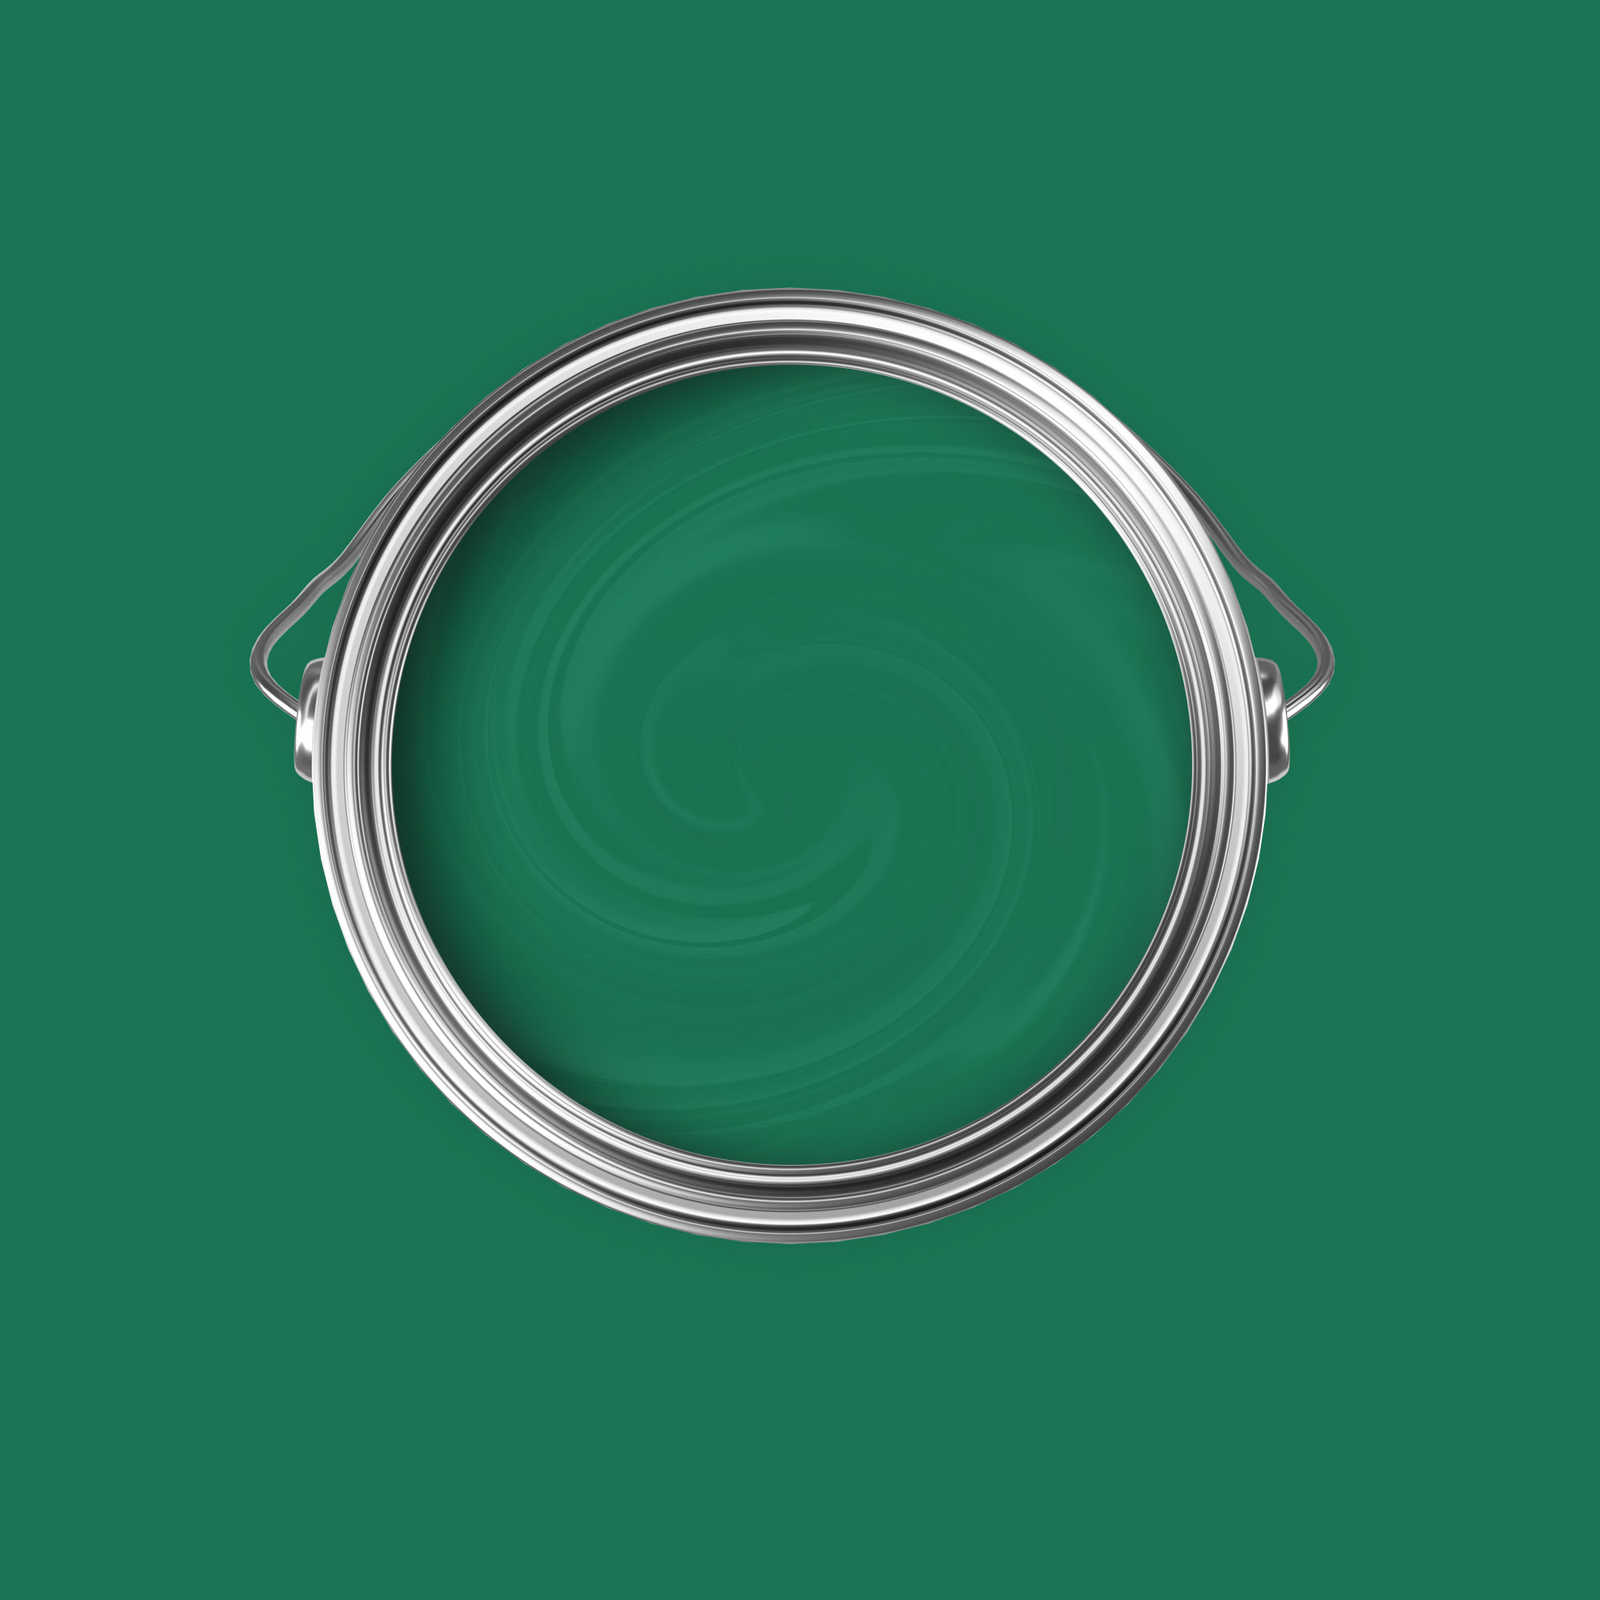             Premium Wandfarbe natürliches Flaschengrün »Gorgeous Green« NW500 – 5 Liter
        